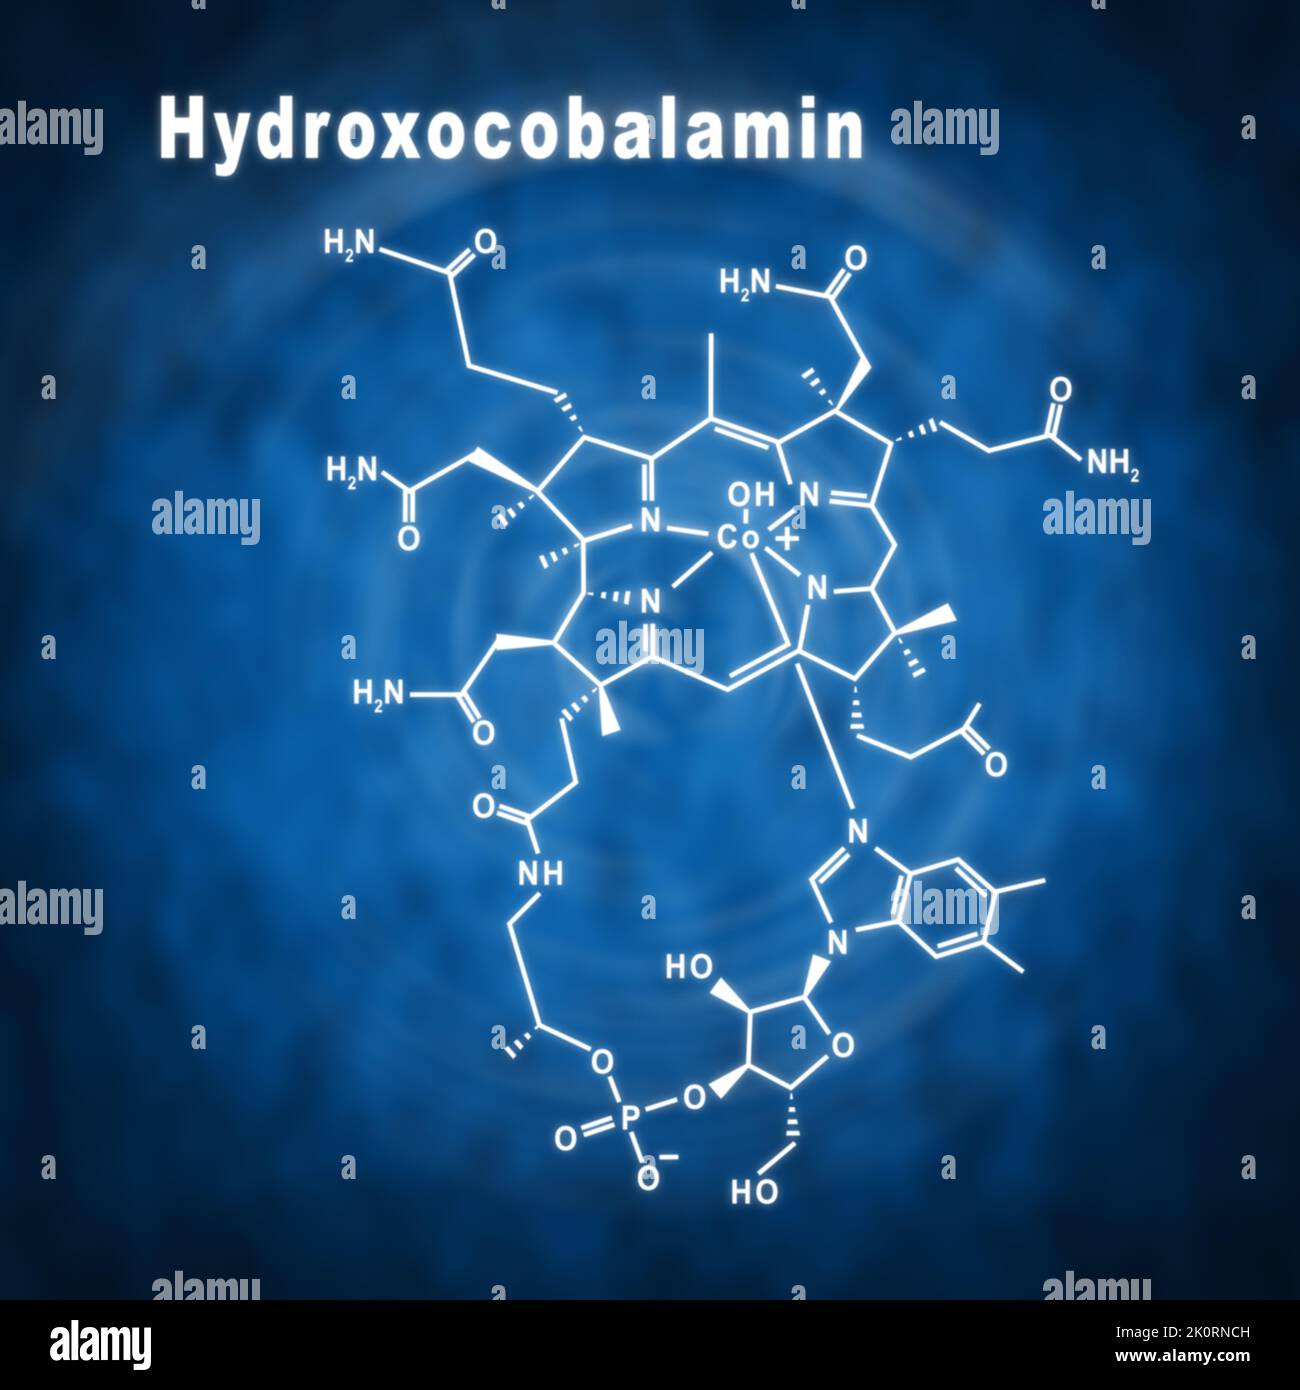 Hydroxocobalamine vitamine B12, formule chimique structurale sur fond bleu Banque D'Images